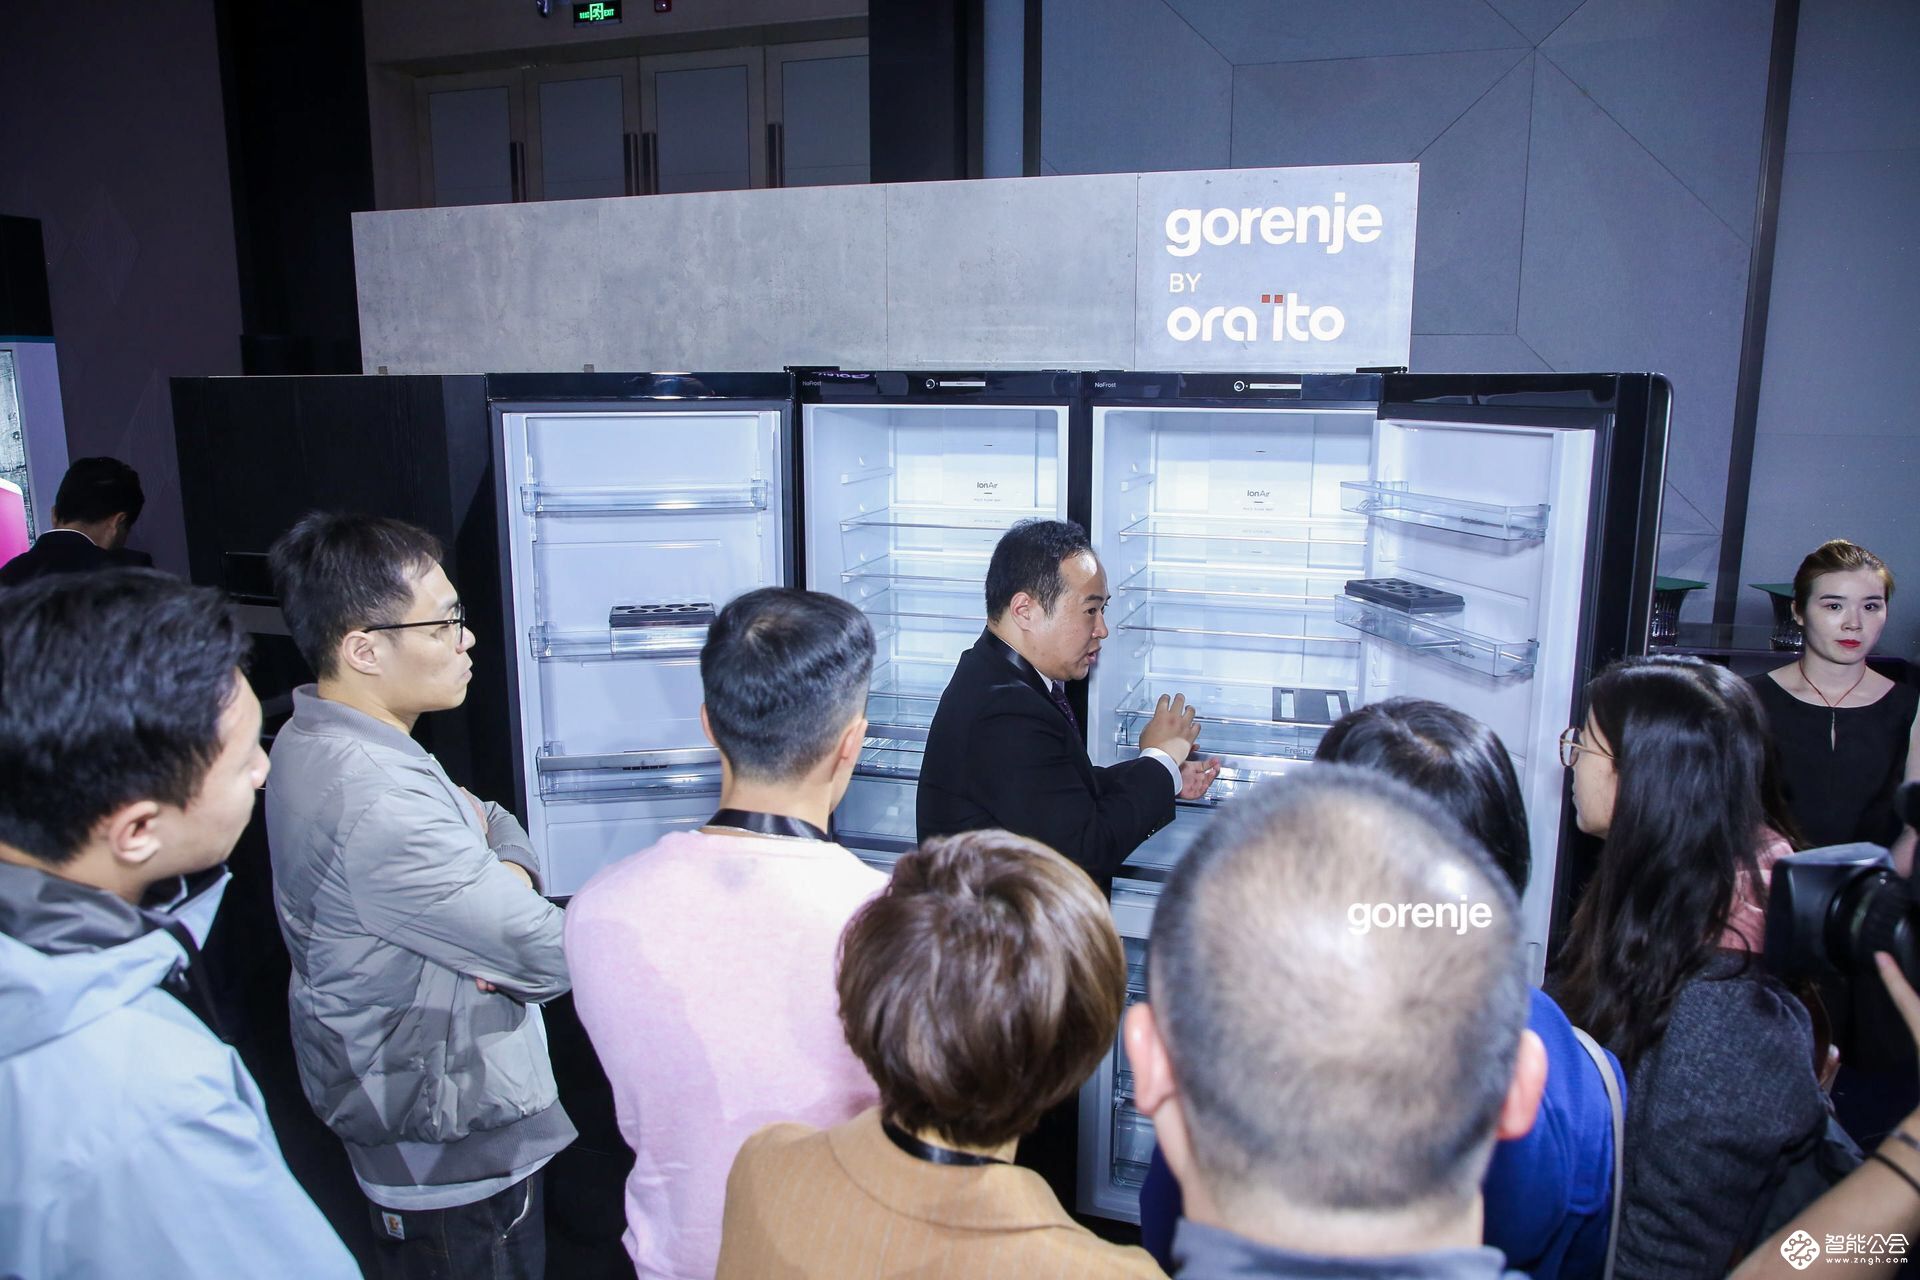 “厨房界的iPhone”来了 鬼才设计师Ora ïto携Gorenje亮相北京 智能公会